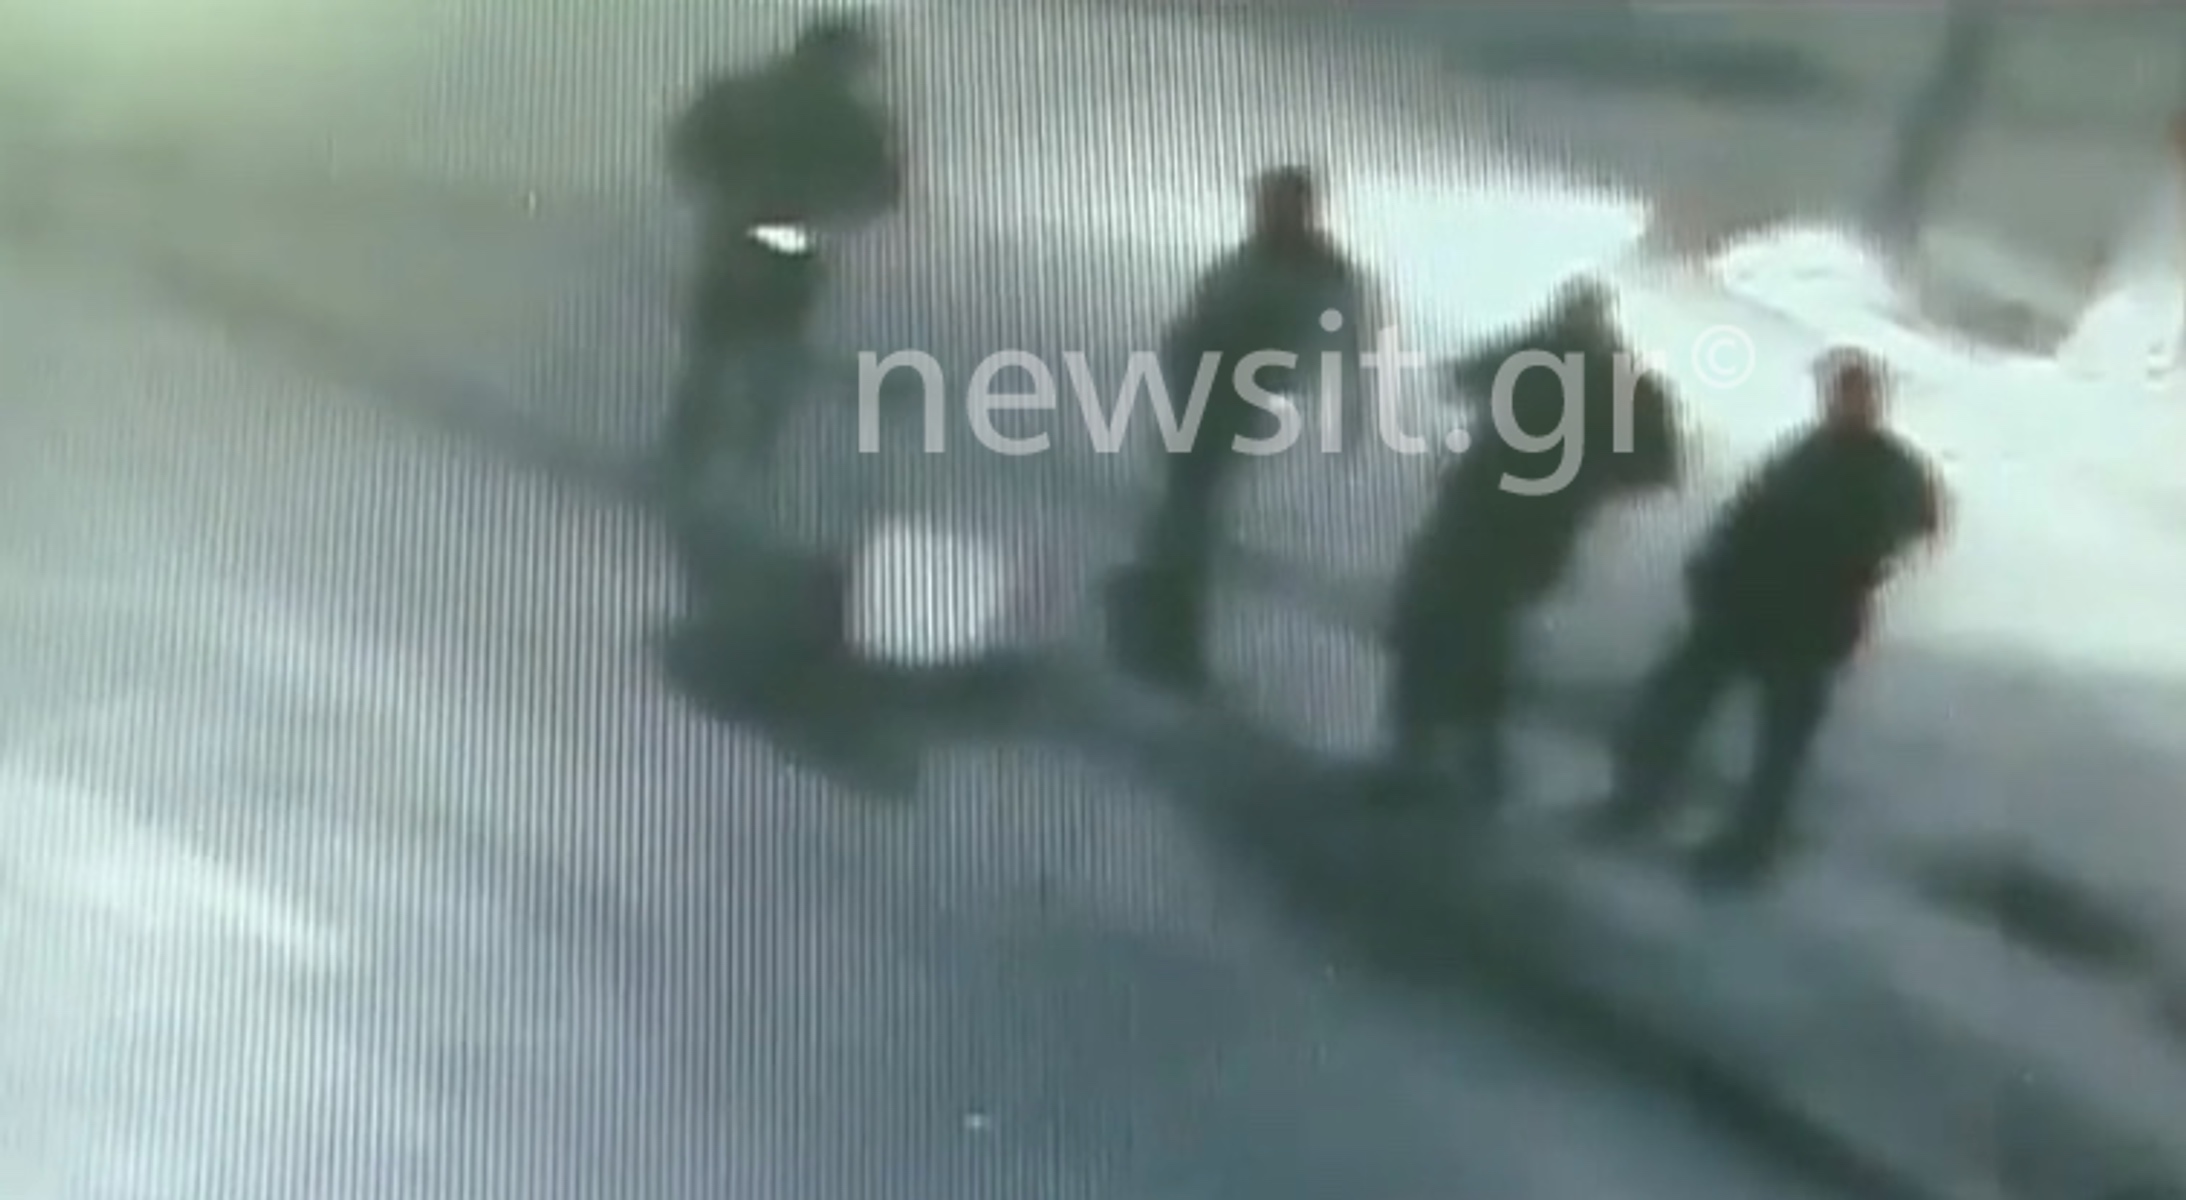 Βάρη: Αυτόπτης μάρτυρας περιγράφει στο newsit.gr τις κινήσεις των εκτελεστών